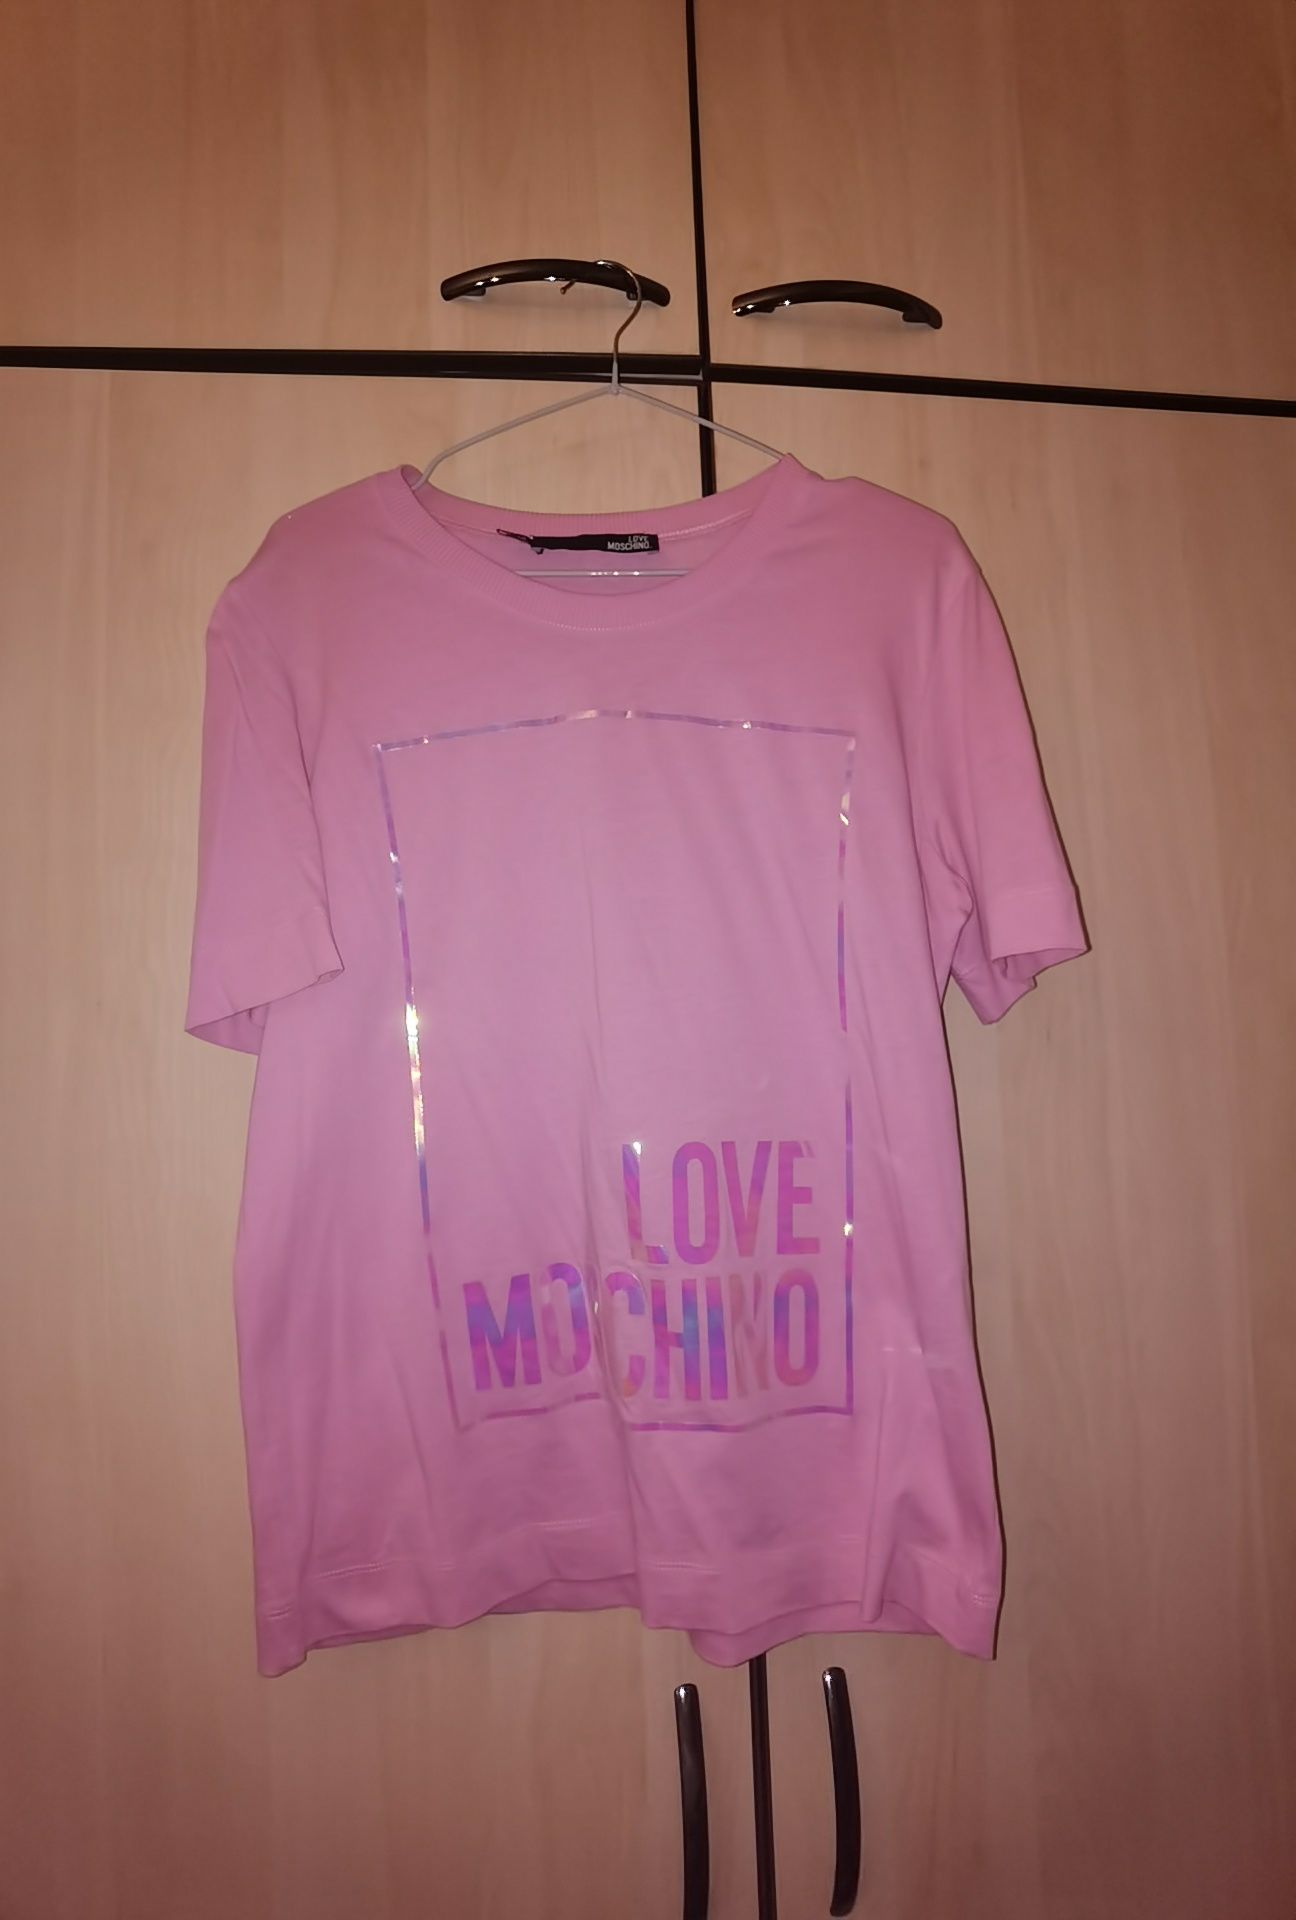 Tricou Love Moschino, nou nouț,original, S